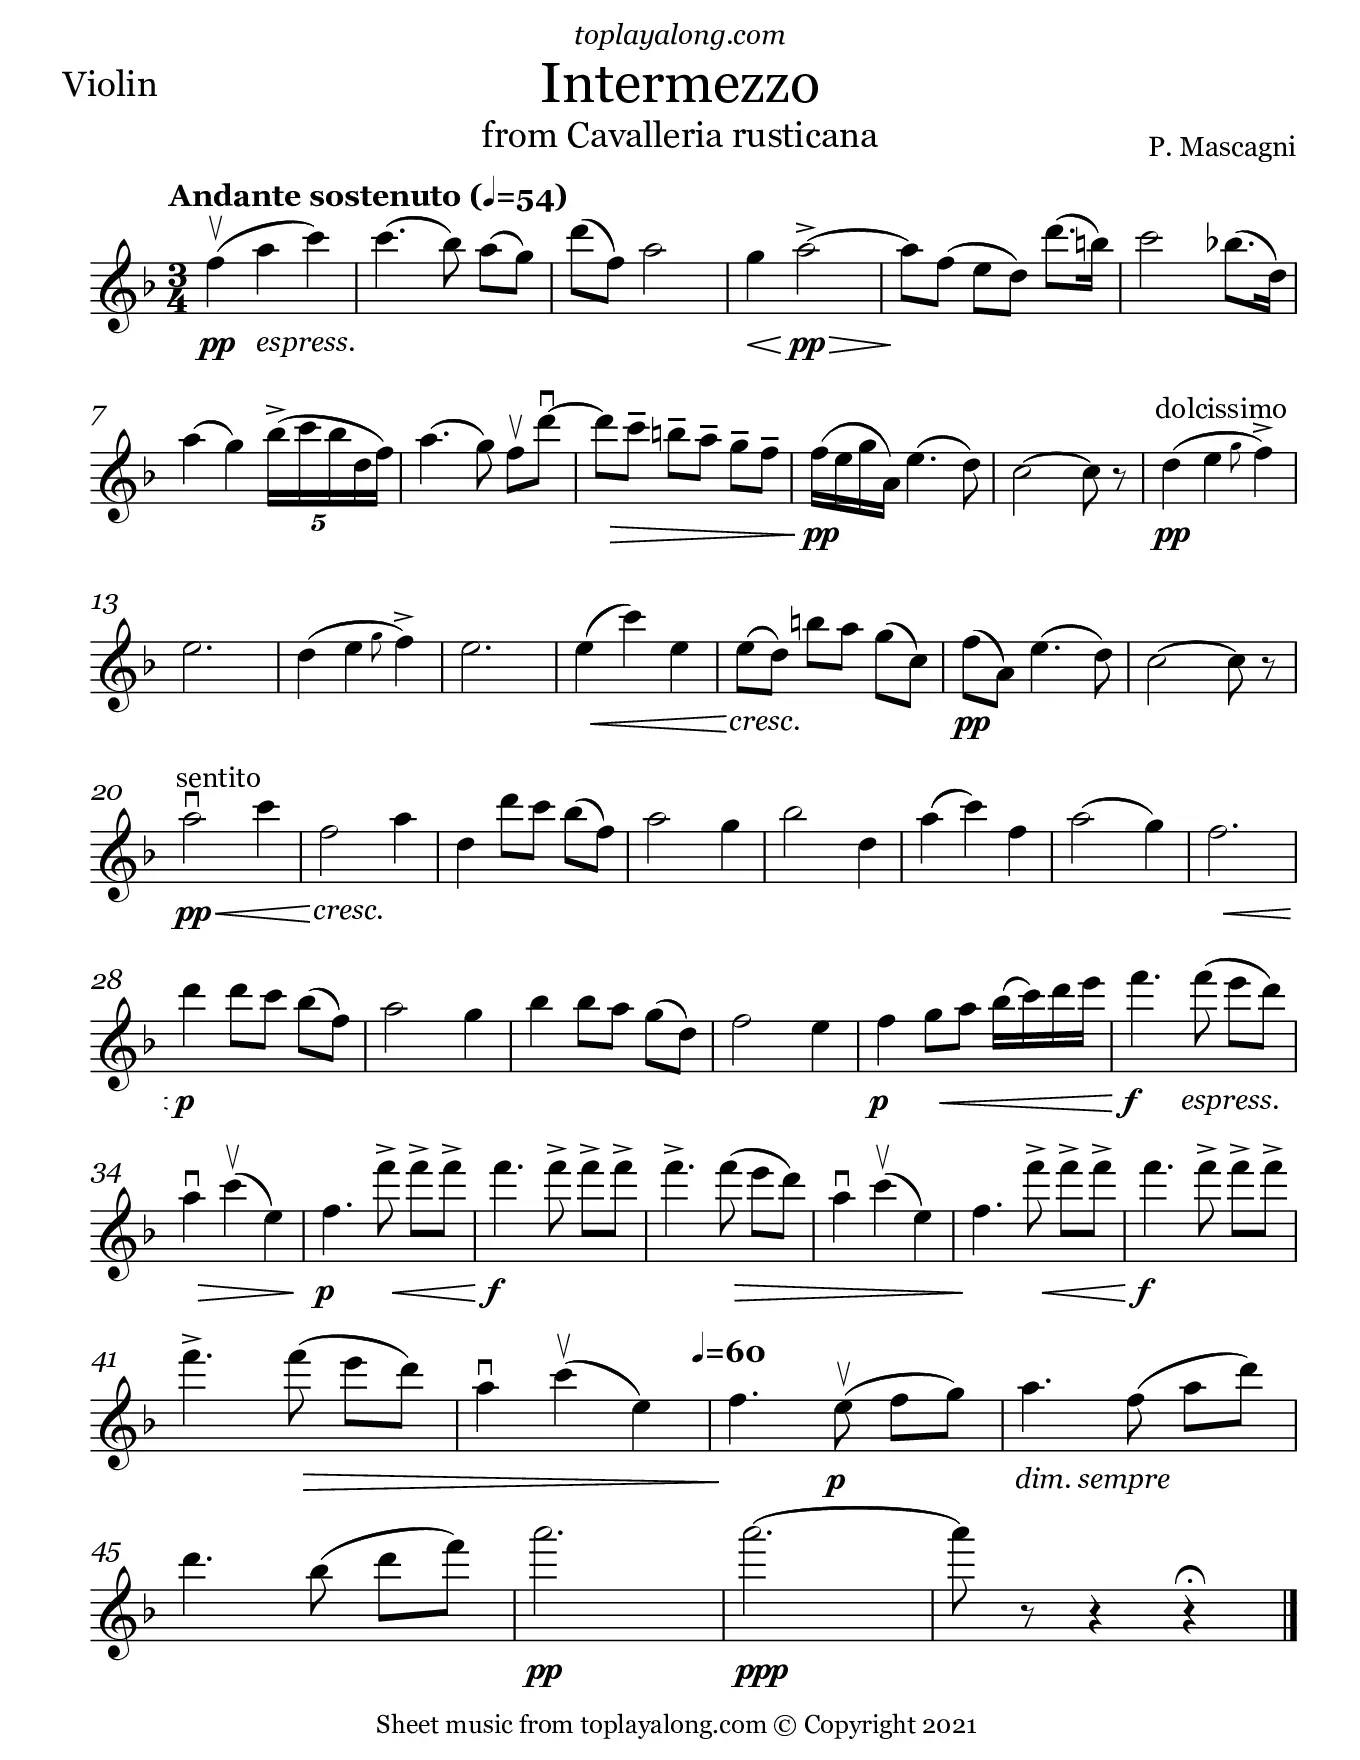 intermezzo cavalleria rusticana violin piano - What key is Intermezzo Cavalleria Rusticana